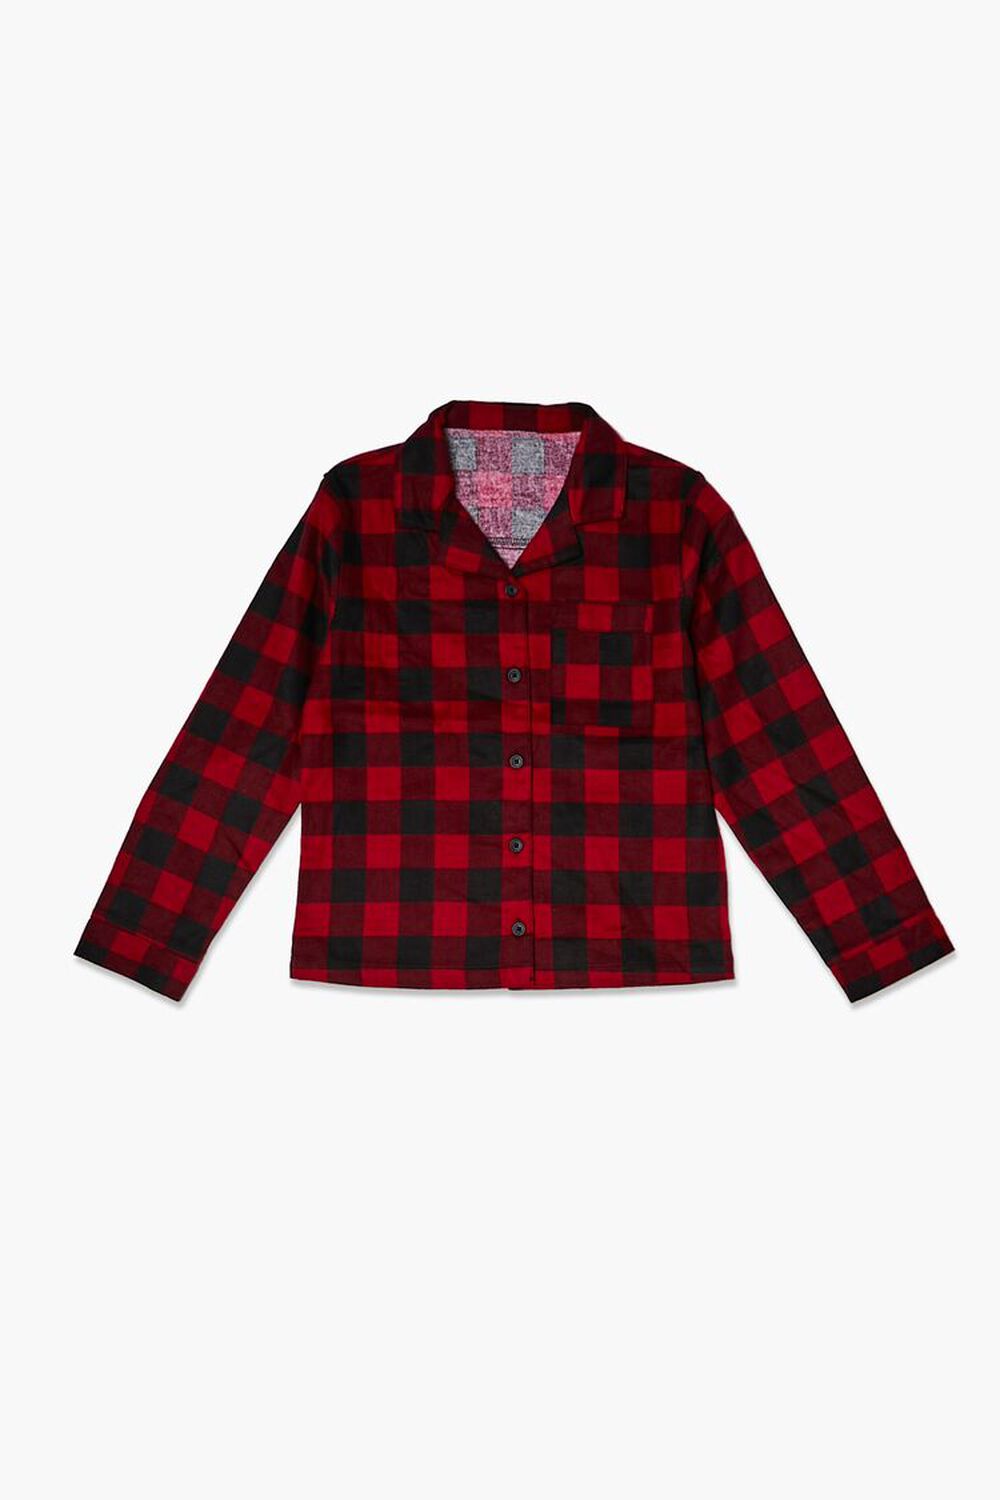 RED/BLACK Kids Buffalo Plaid PJ Shirt (Girls + Boys), image 1